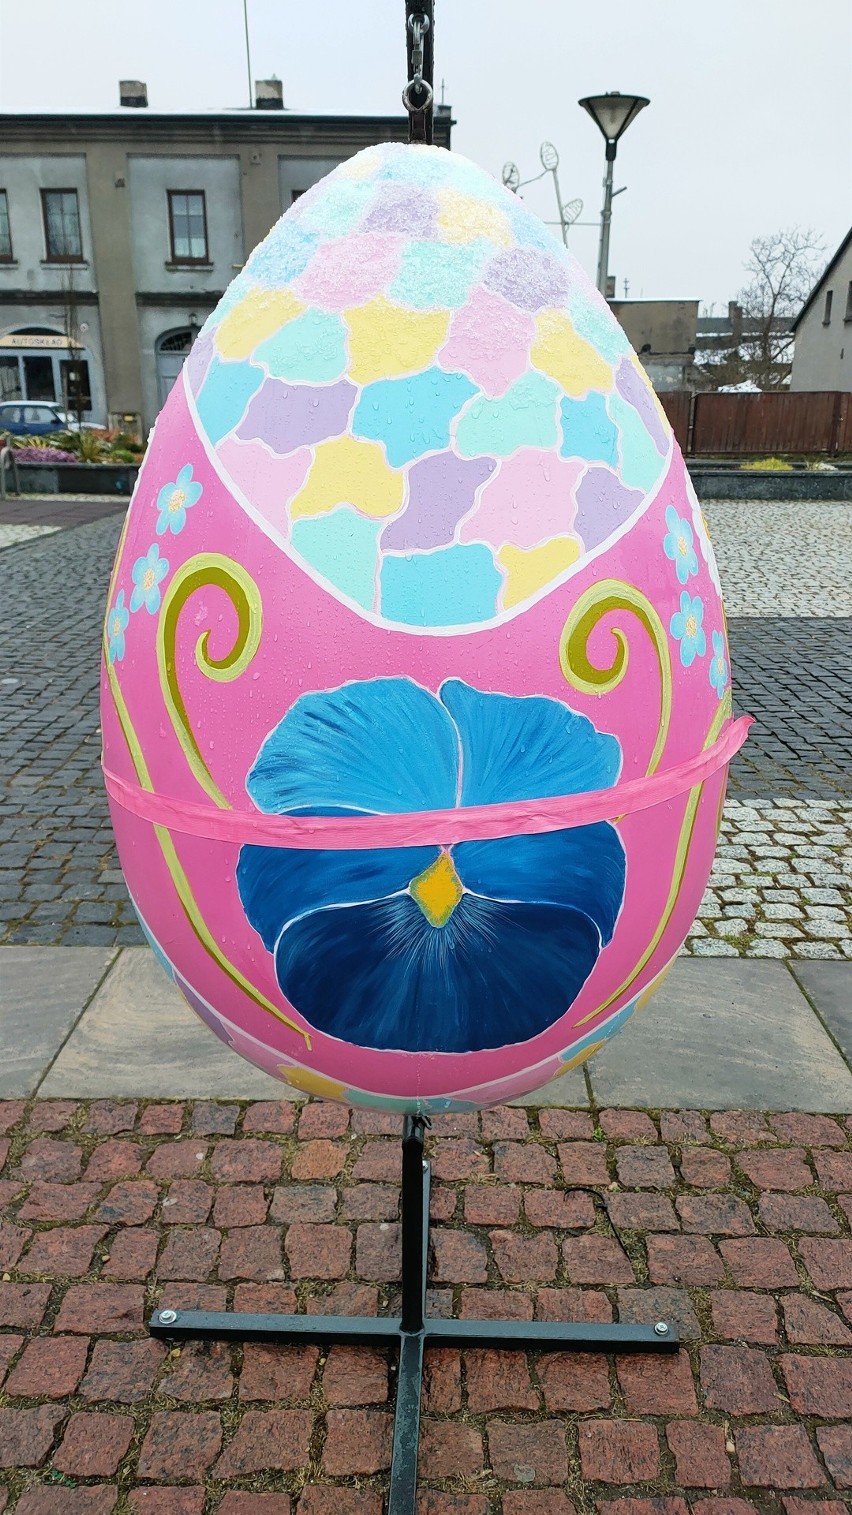 Wielkanocne dekoracje pojawiły się na rynku oraz na placu...